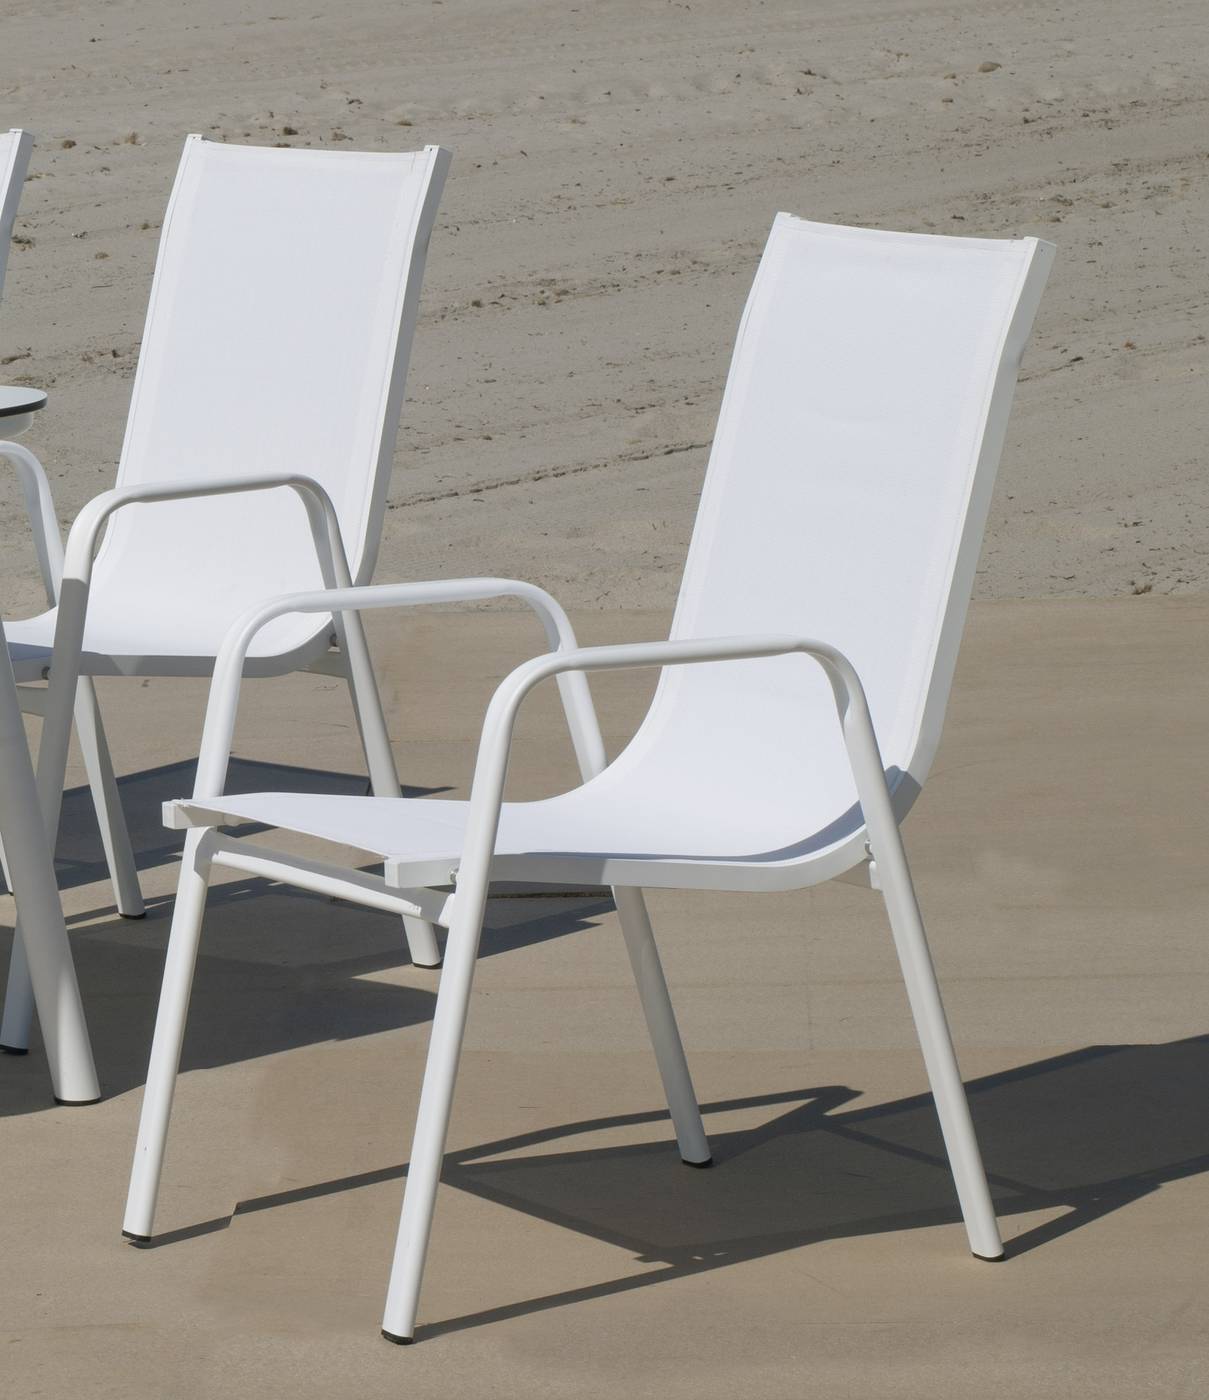 Conjunto Aluminio Avalon - Conjunto aluminio: 1 sofá 2 plazas + 2 sillones + 1 mesa de centro HPL. De color blanco, antracita, champagne, plata o marrón.